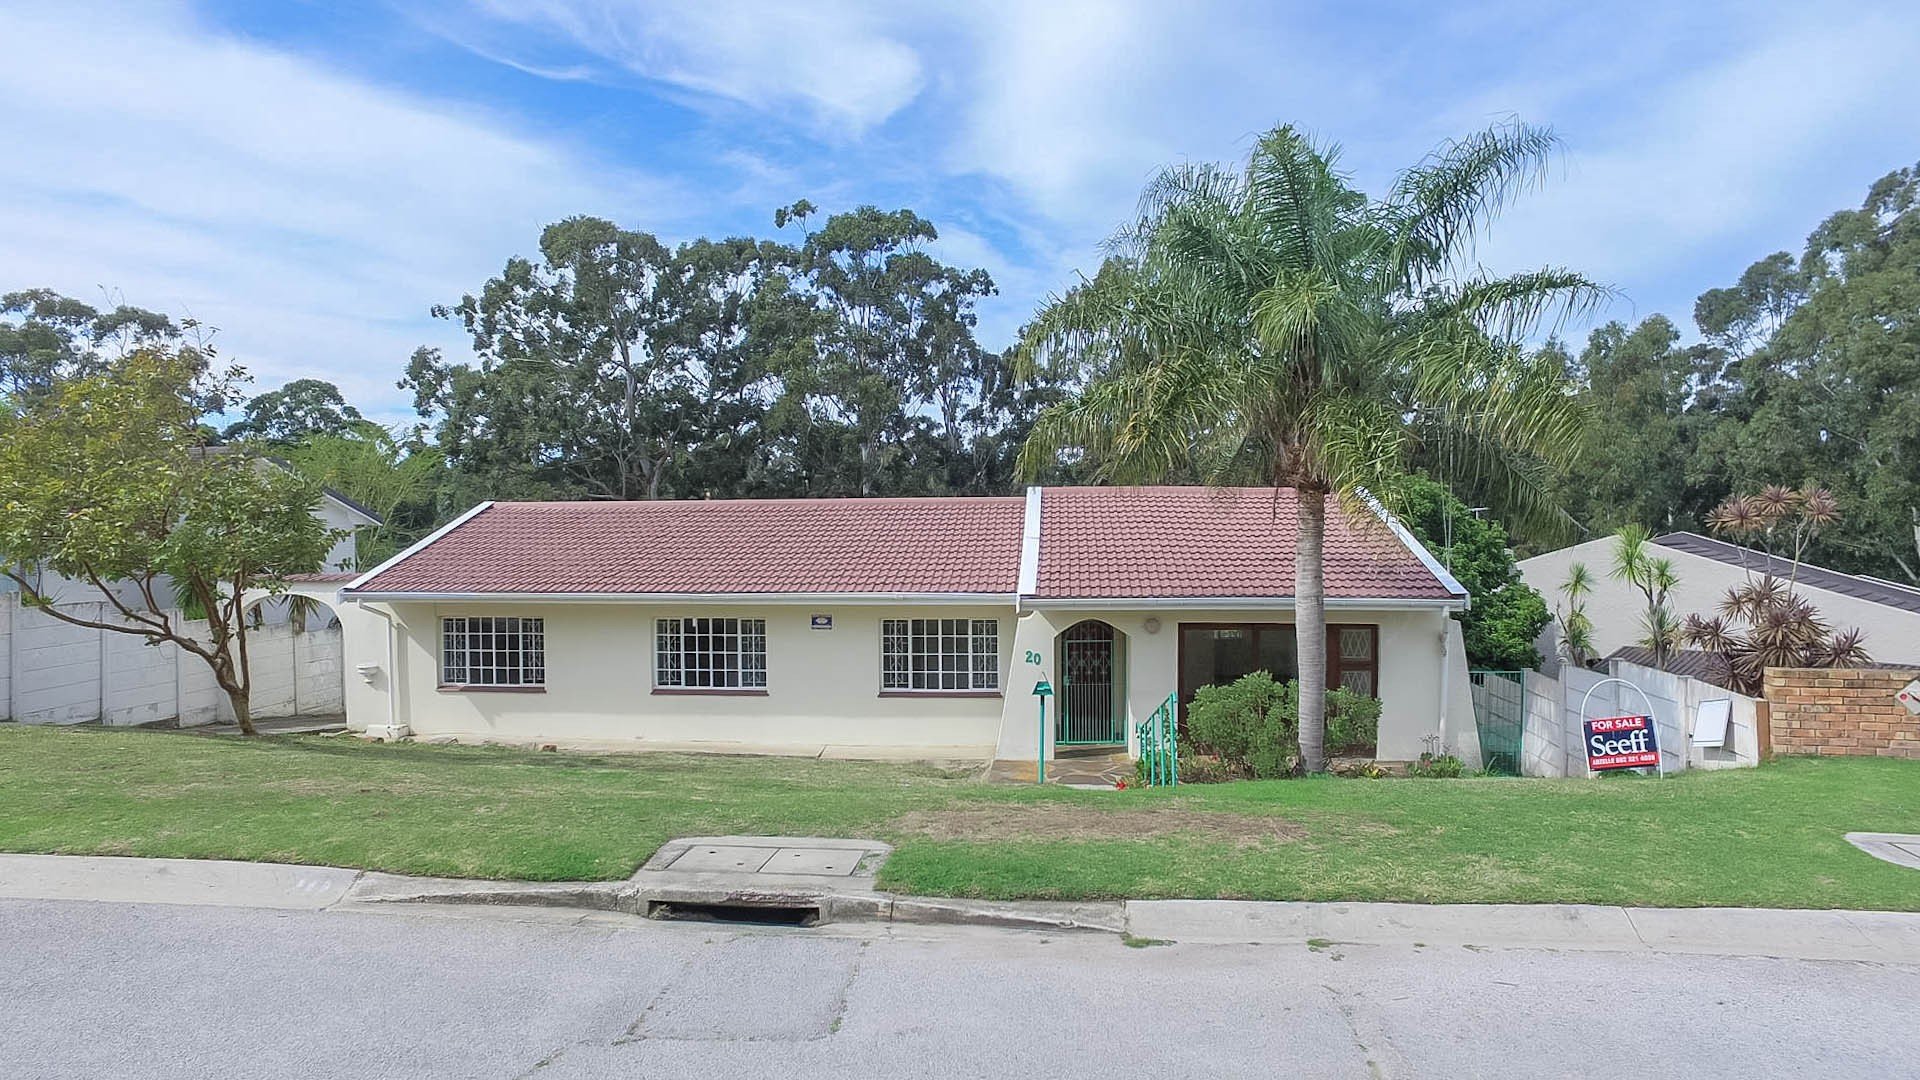  House  for sale  in Port  Elizabeth  3 bedroom 13302791 9 19